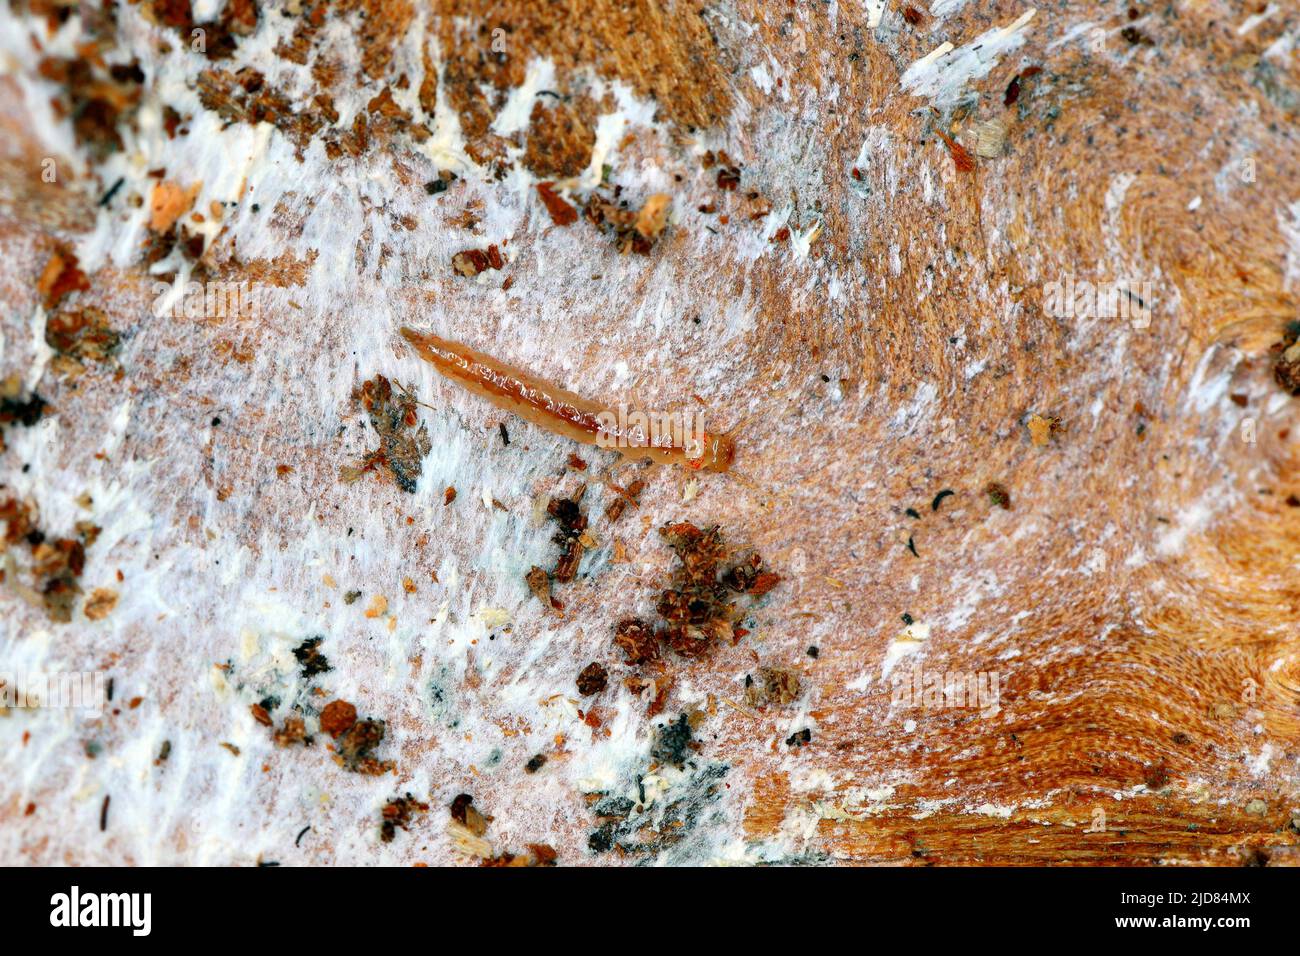 La larva del coleottero della famiglia degli scarabei (Staphylinidae) sotto corteccia. Sono agili cacciatori di peste Foto Stock